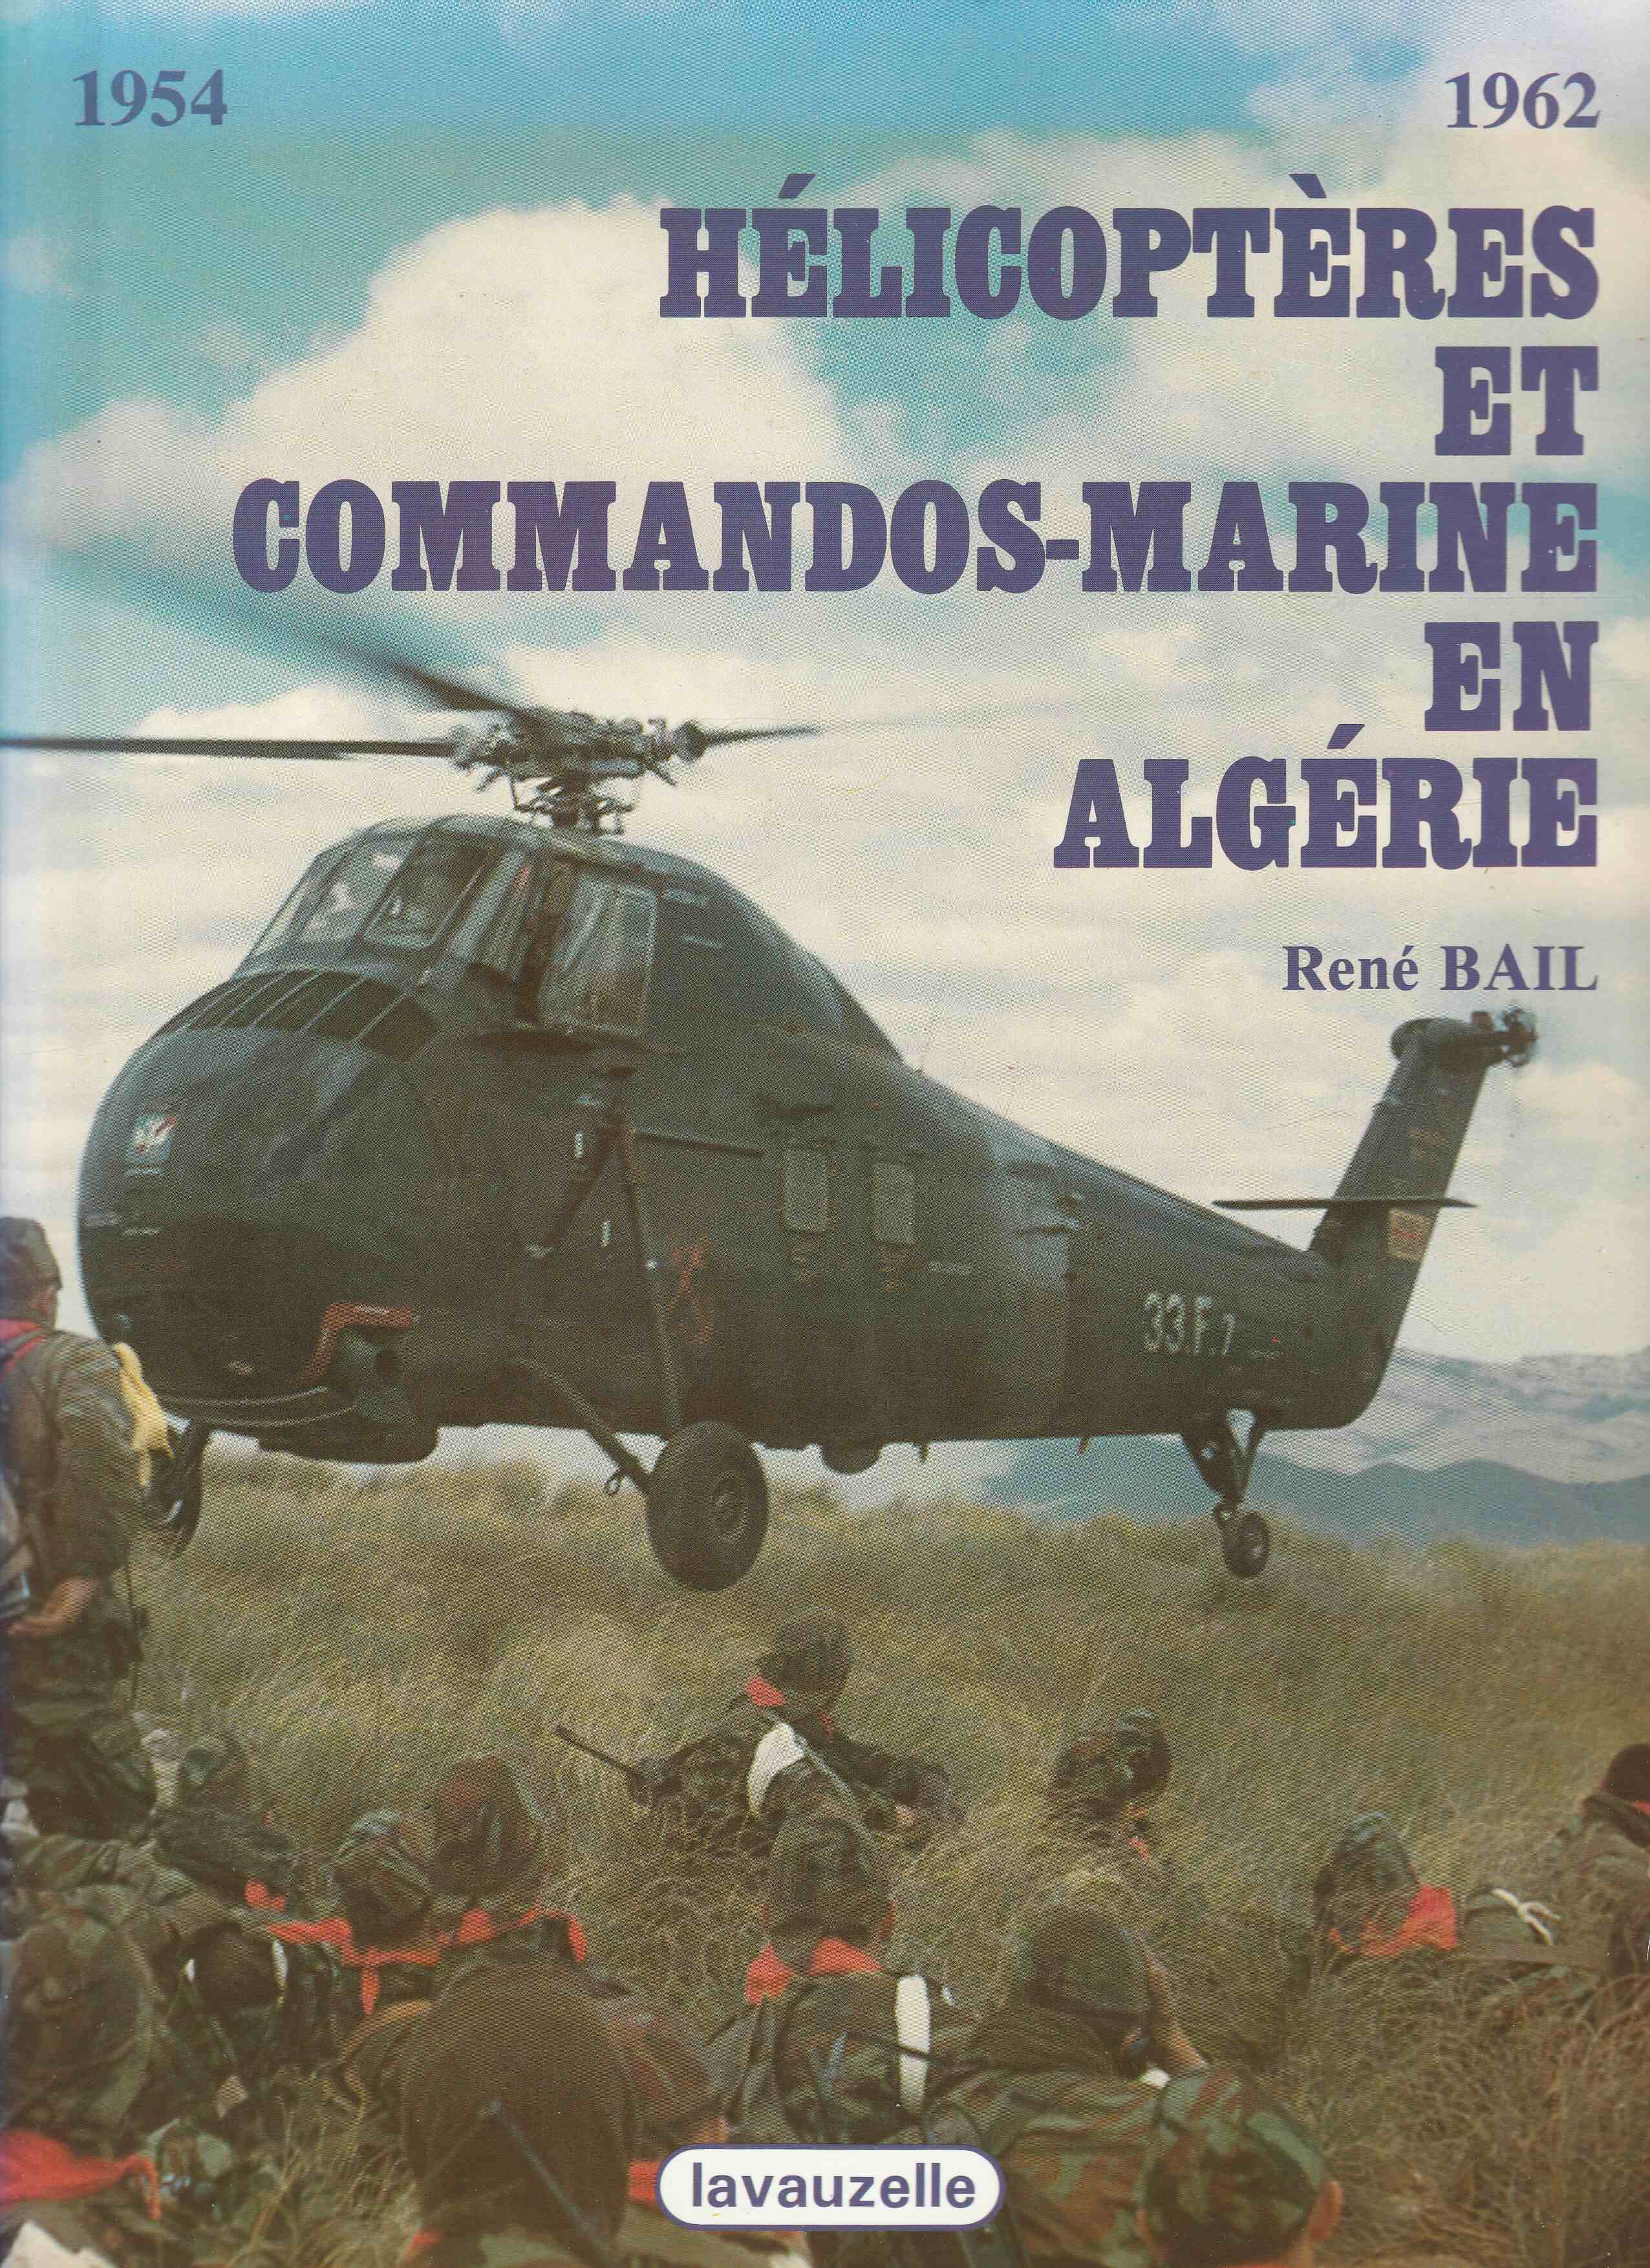 [Divers Commandos] Participation des commandos aux opérations en Algérie - Page 3 Img_2040